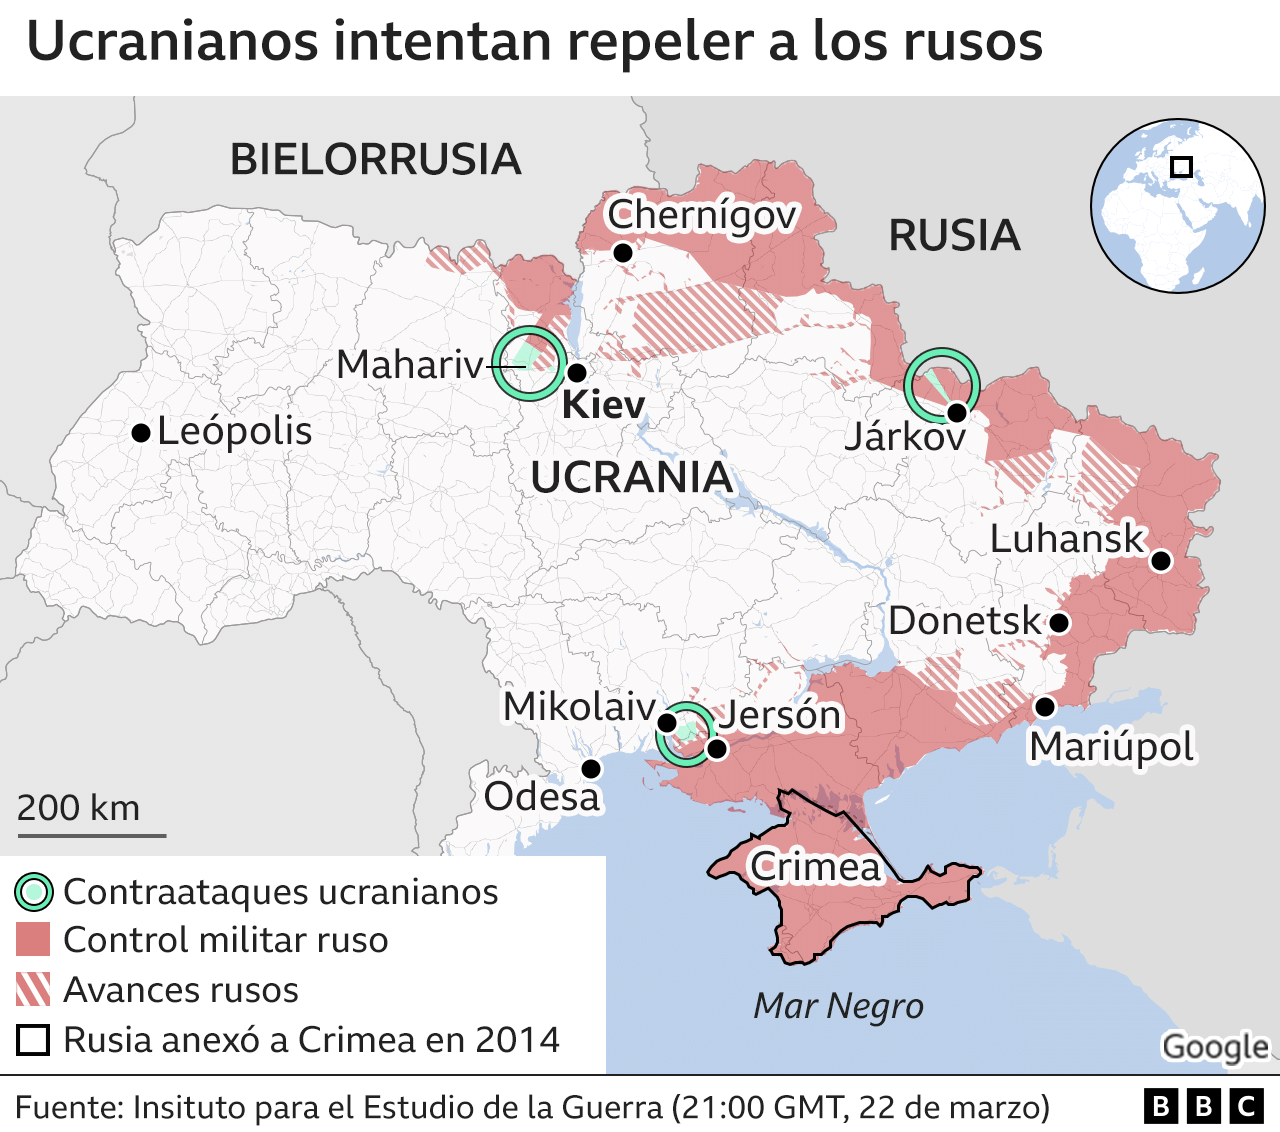 Mapa de Ucrania que muestra la resistencia ucraniana contra las fuerzas rusas